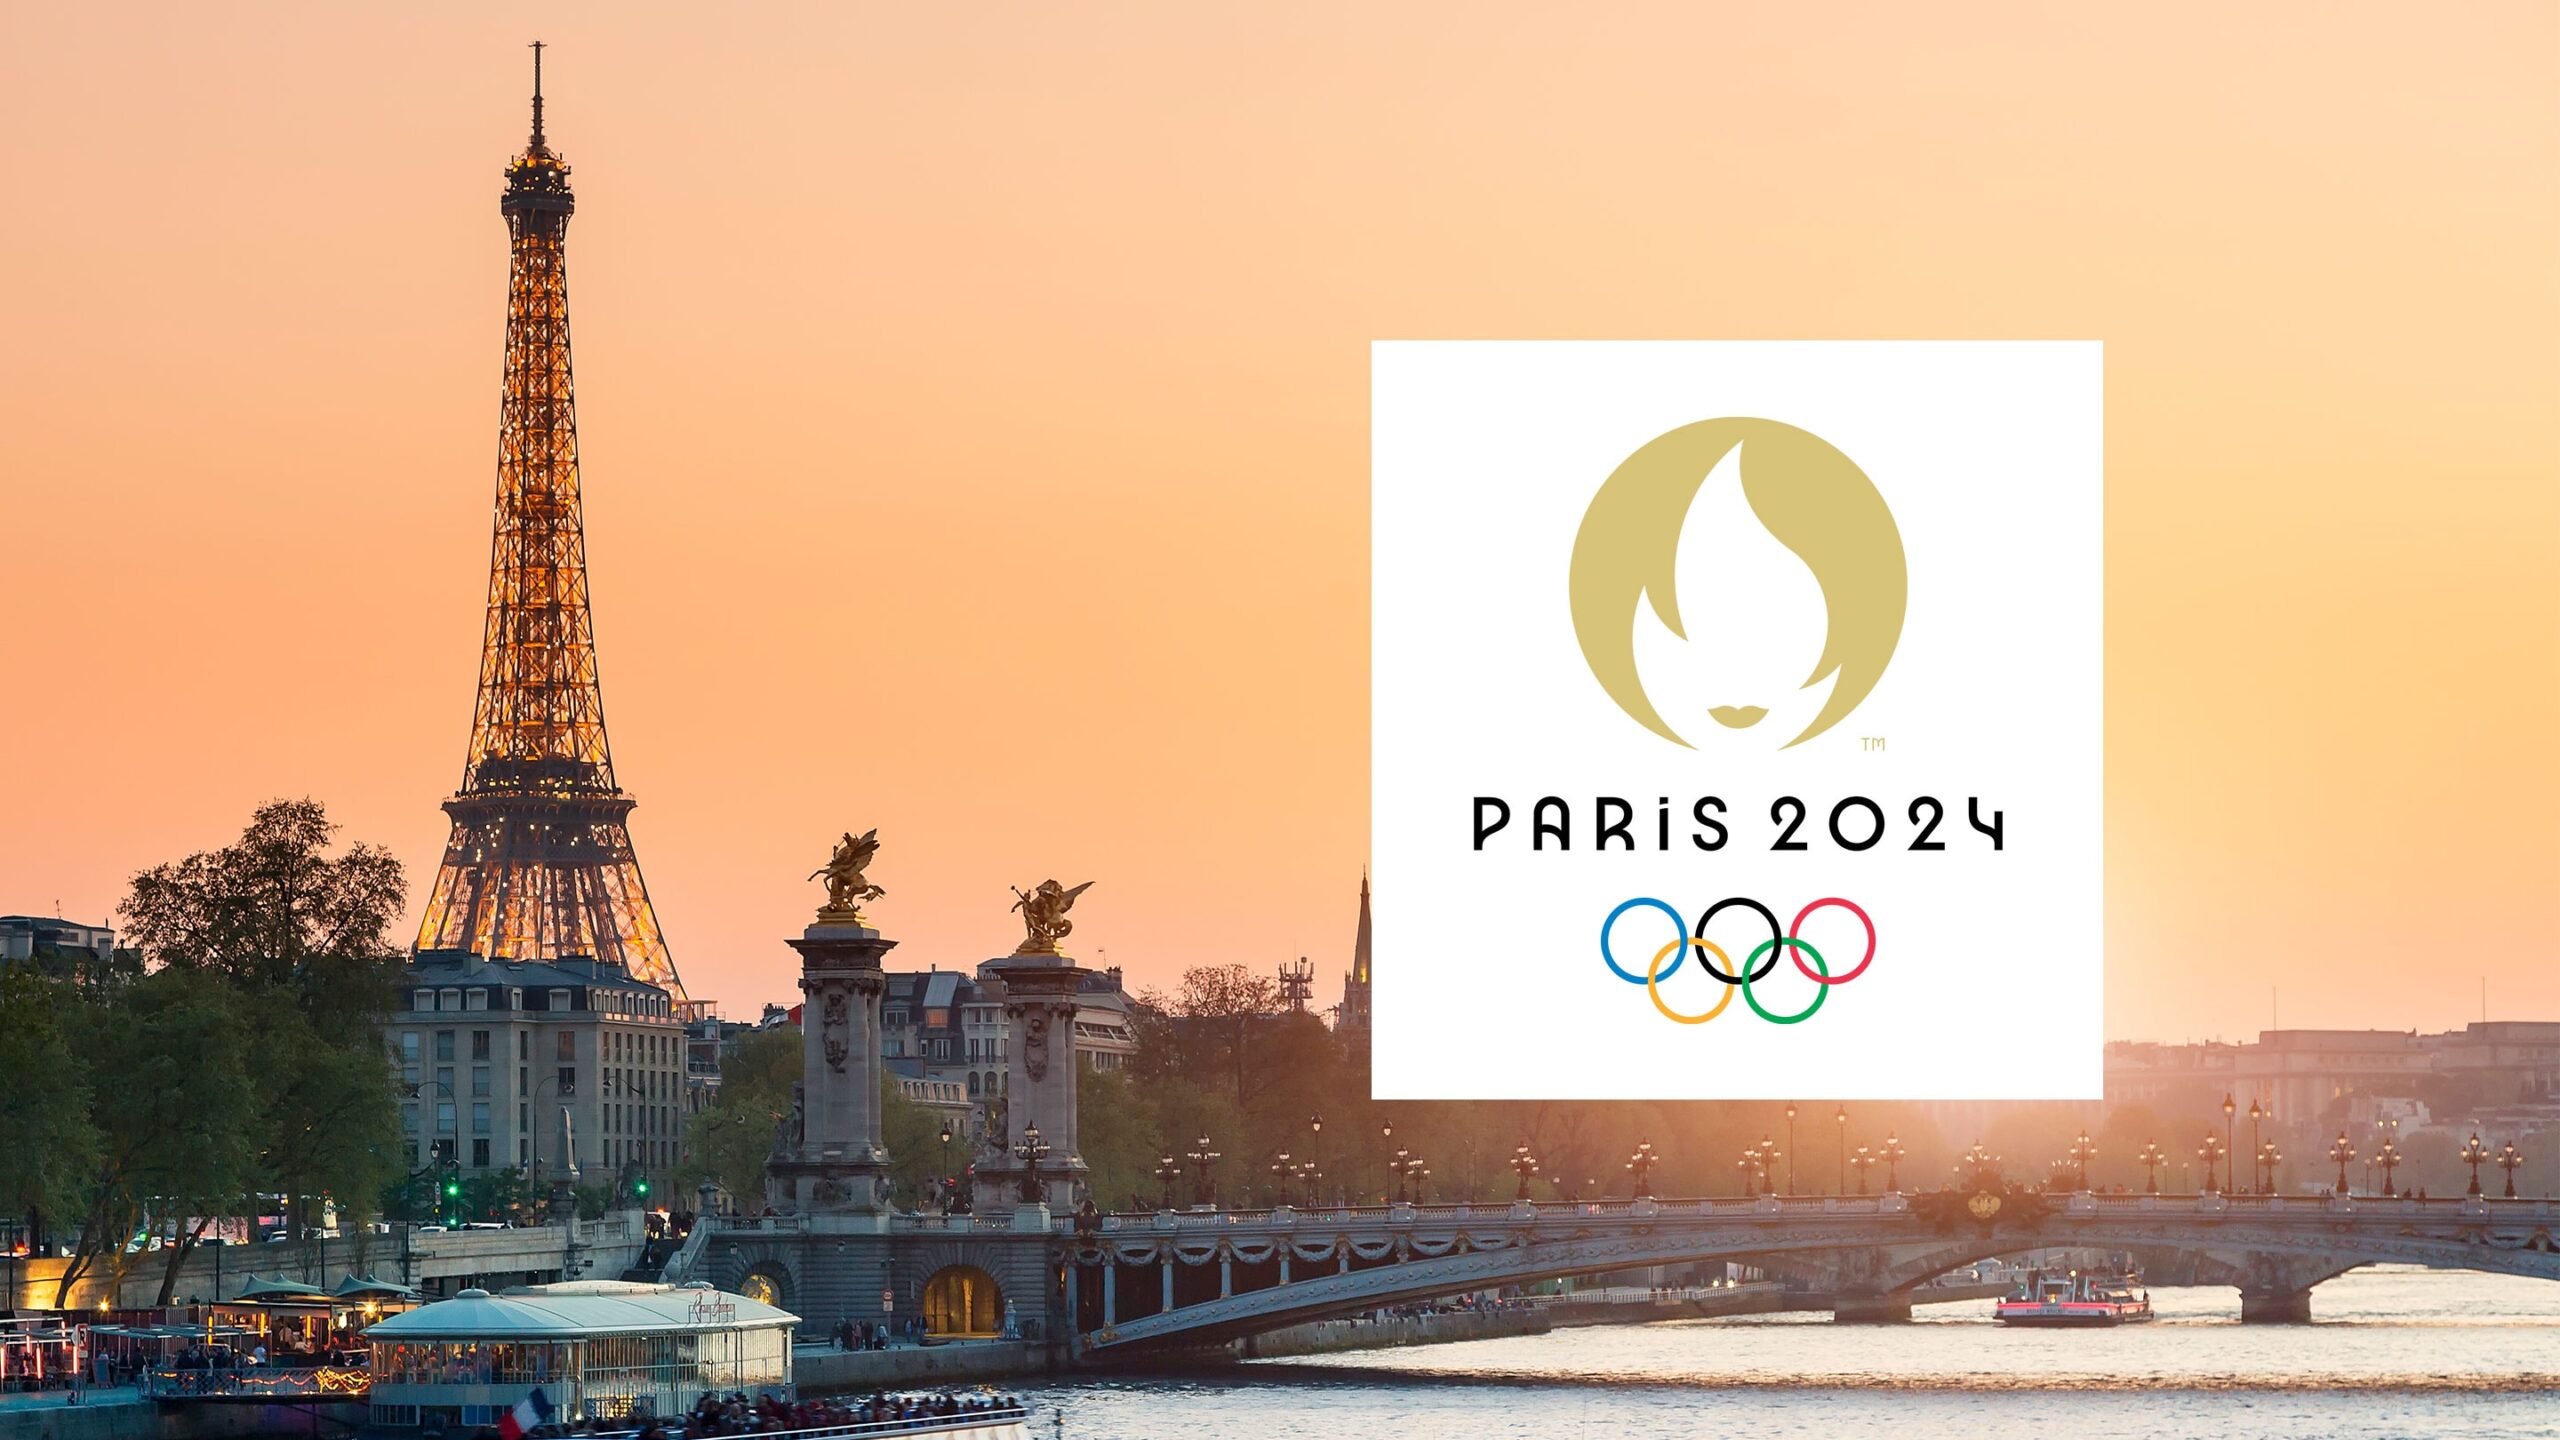 أولمبياد باريس 2024 scaled